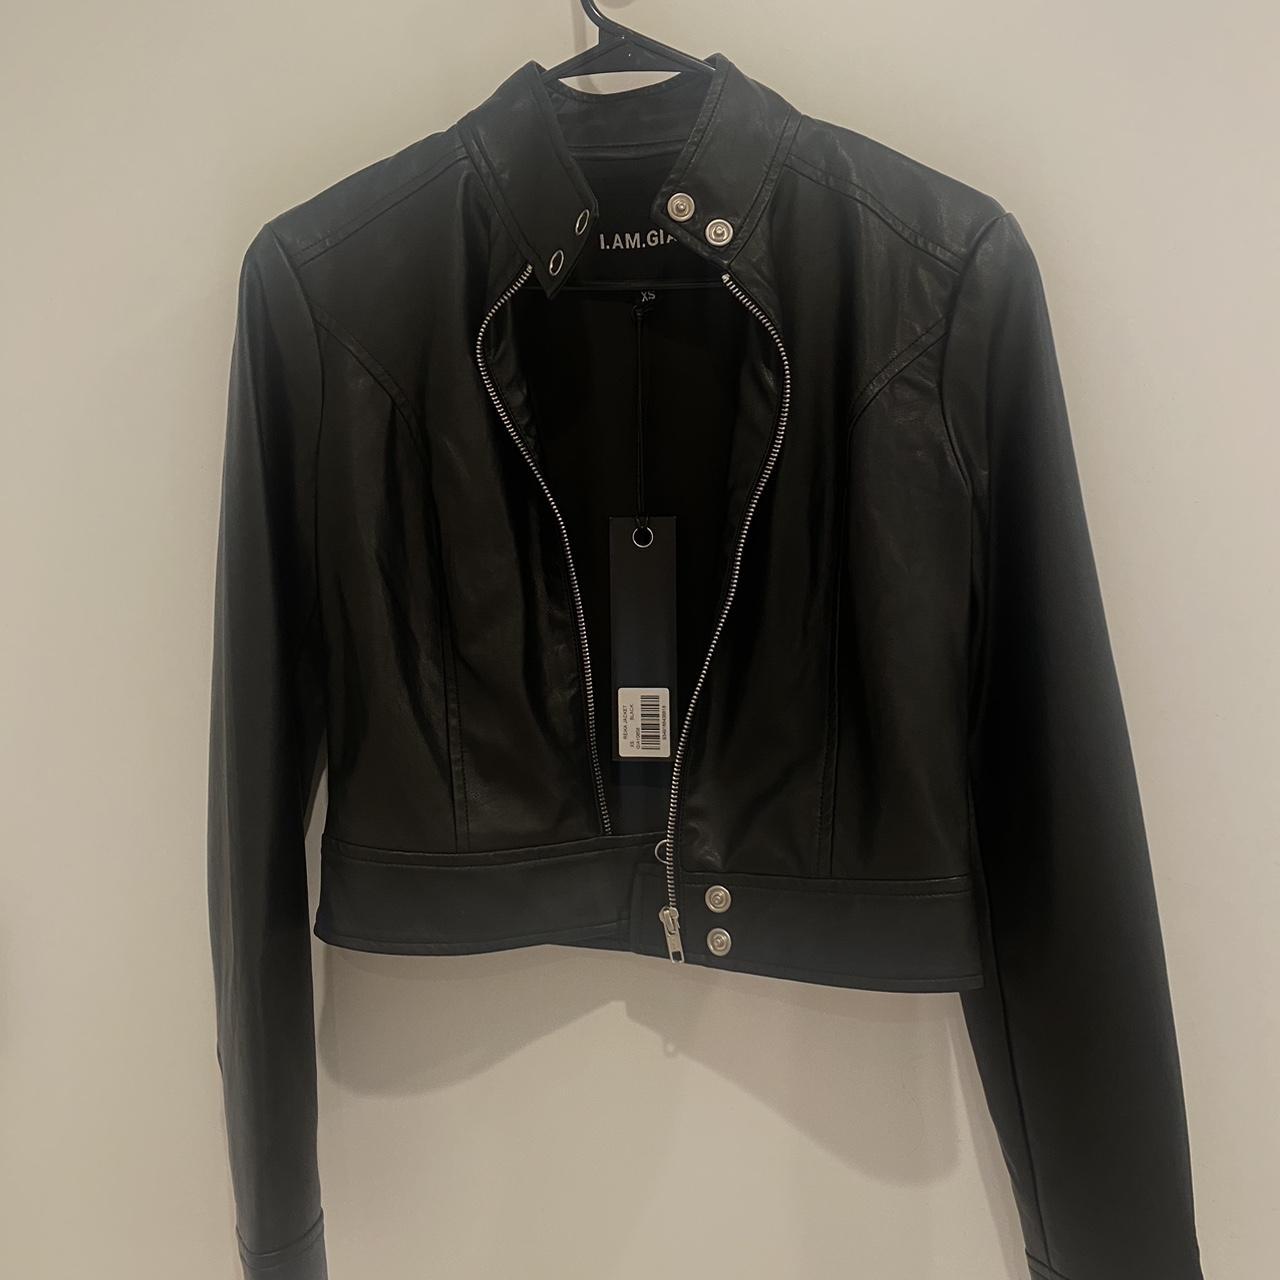 I.AM.GIA leather jacket iamgia Reika jacket... - Depop